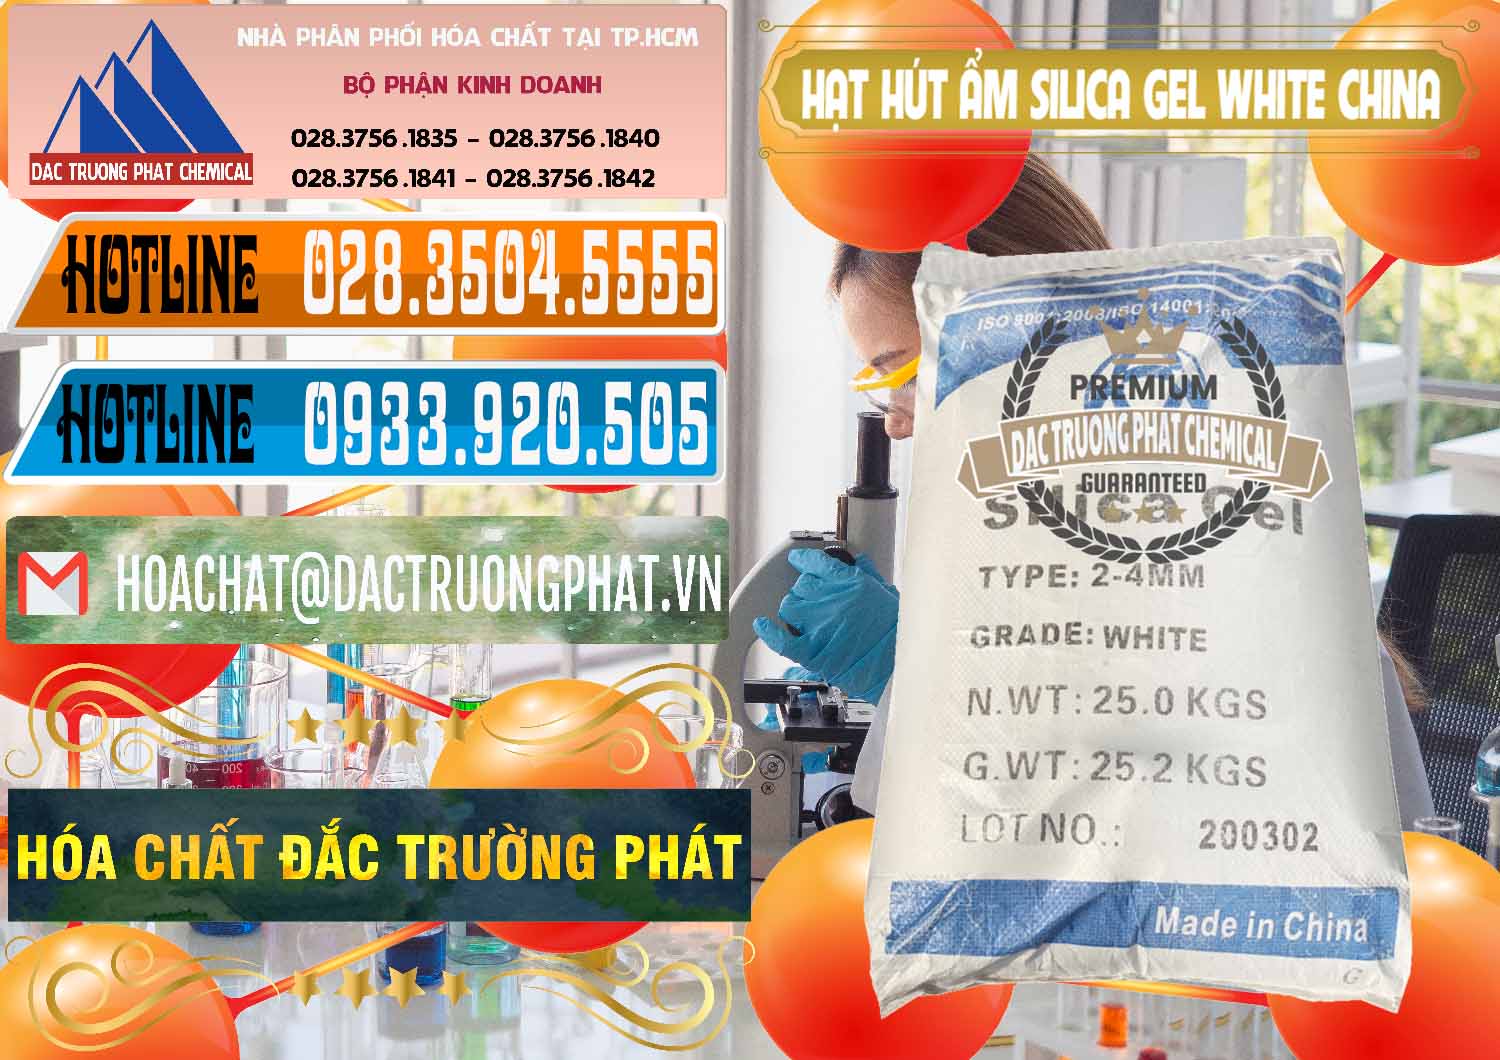 Đơn vị chuyên nhập khẩu _ bán Hạt Hút Ẩm Silica Gel White Trung Quốc China - 0297 - Công ty chuyên phân phối ( bán ) hóa chất tại TP.HCM - stmp.net